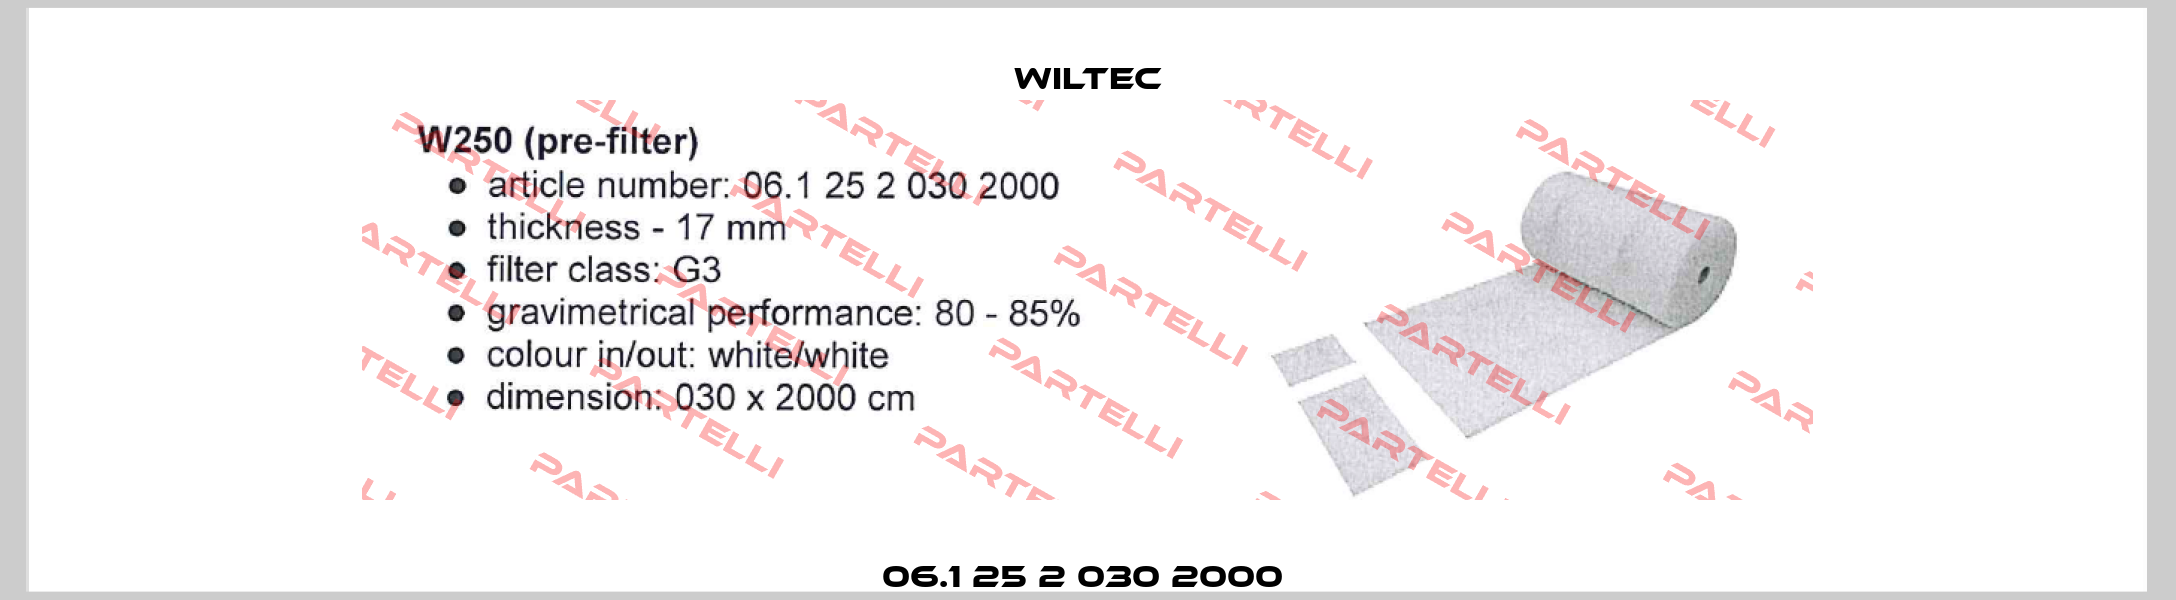 06.1 25 2 030 2000  Wiltec